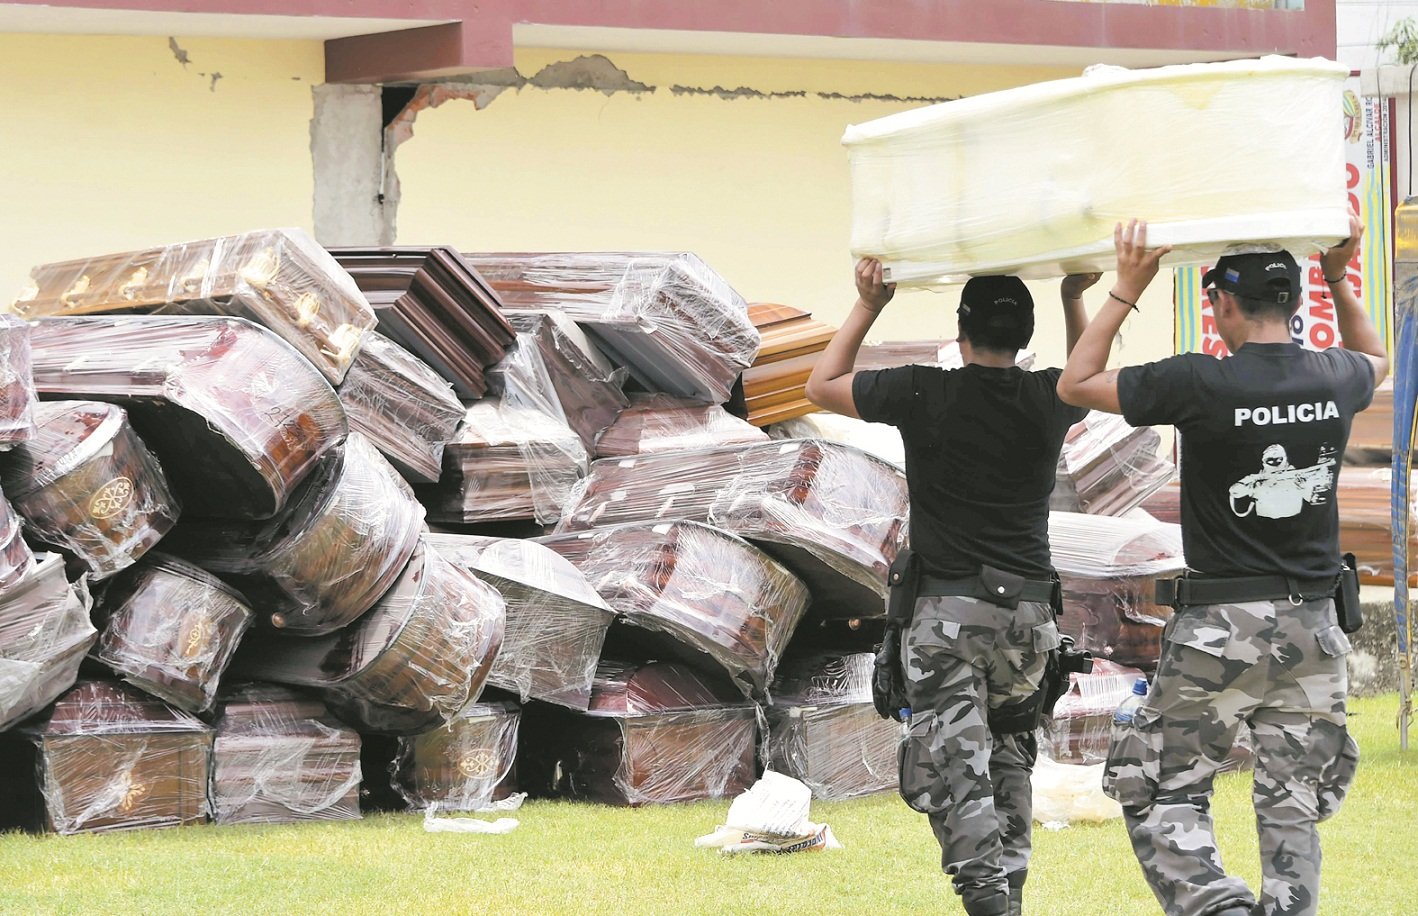 在受灾严重的佩德纳莱斯，警员将大量棺木集中放在球场上，以便灾民安置离世的亲人。